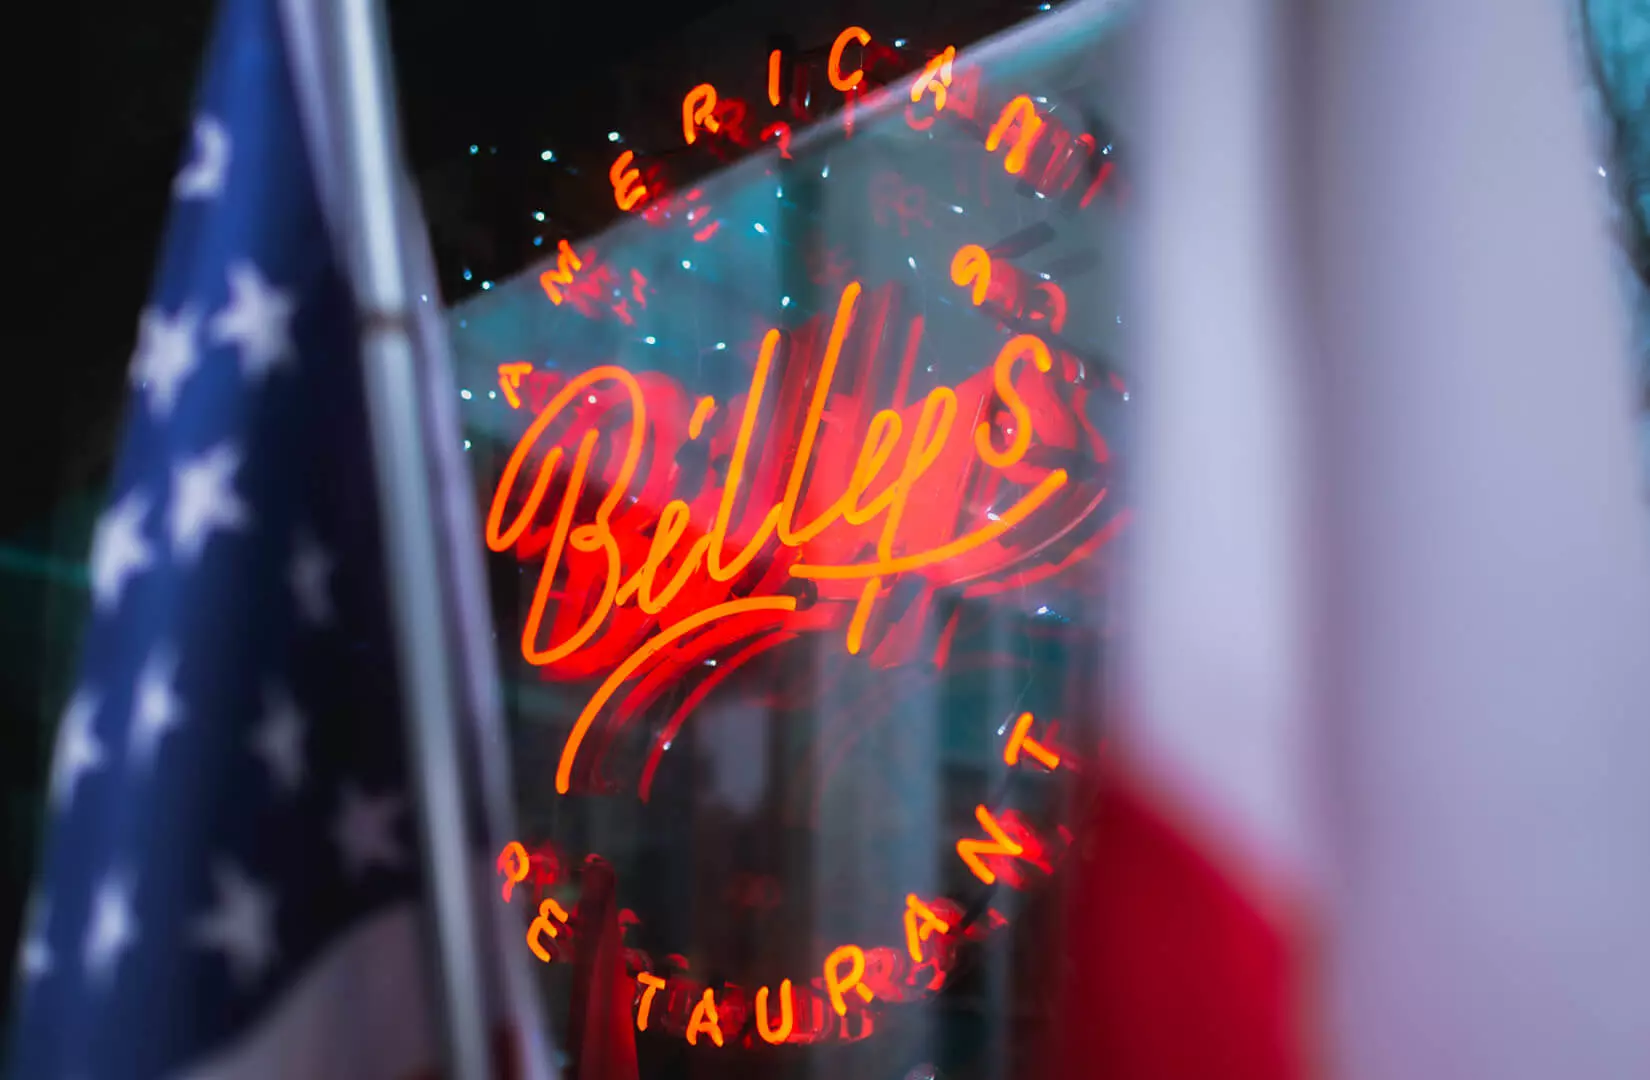 Billy's - Rote Leuchtreklame in einem amerikanischen Restaurant